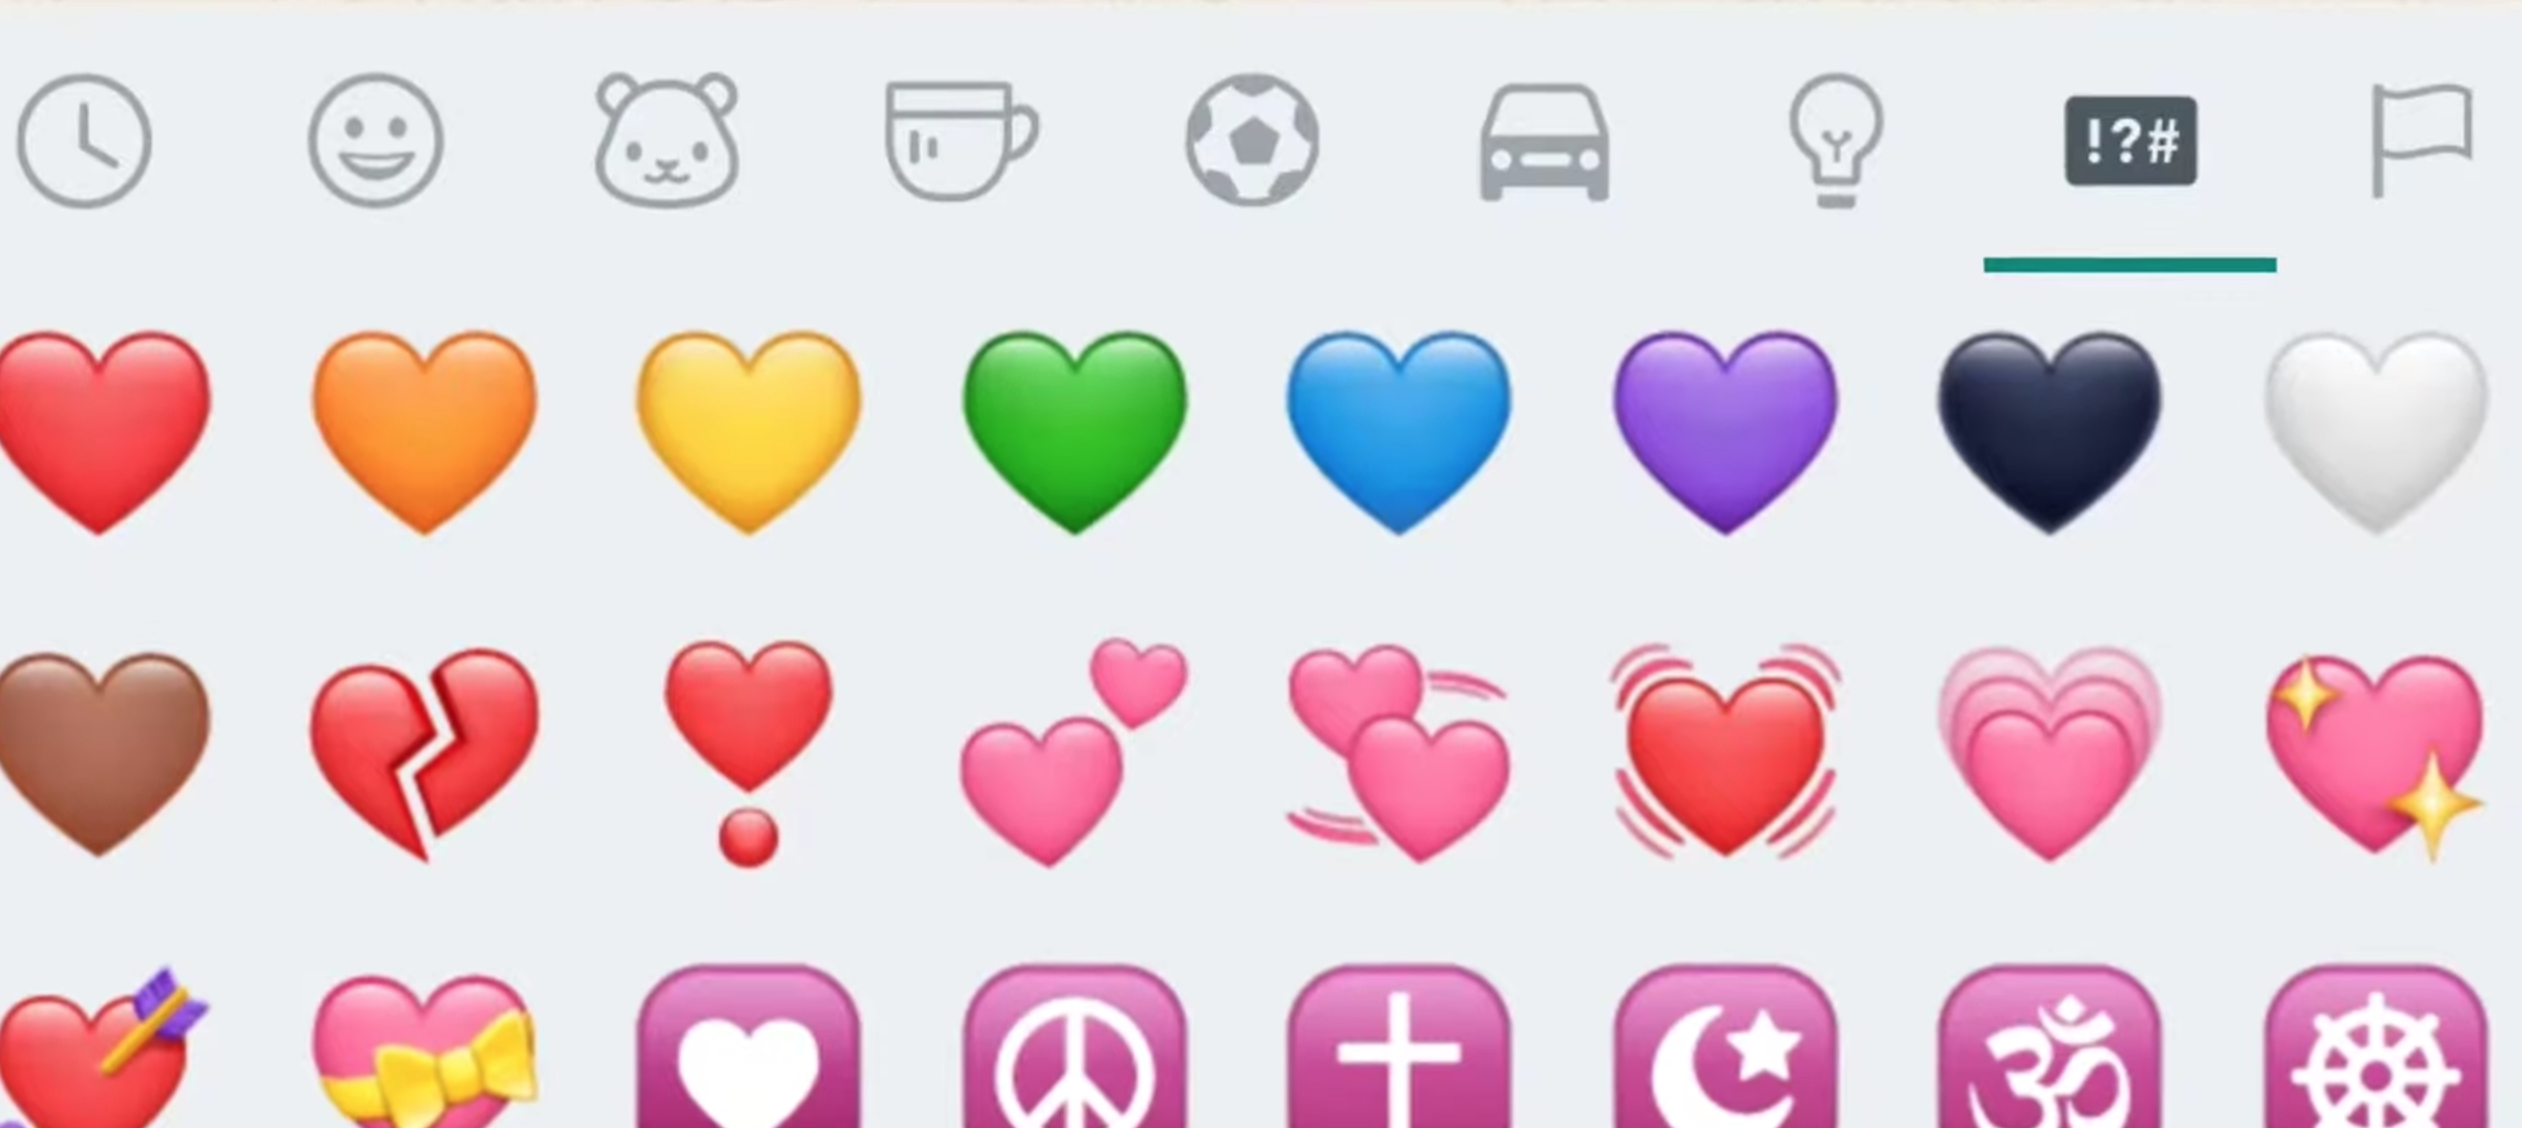  WhatsApp'taki kalp emojilerinin gerçek anlamı